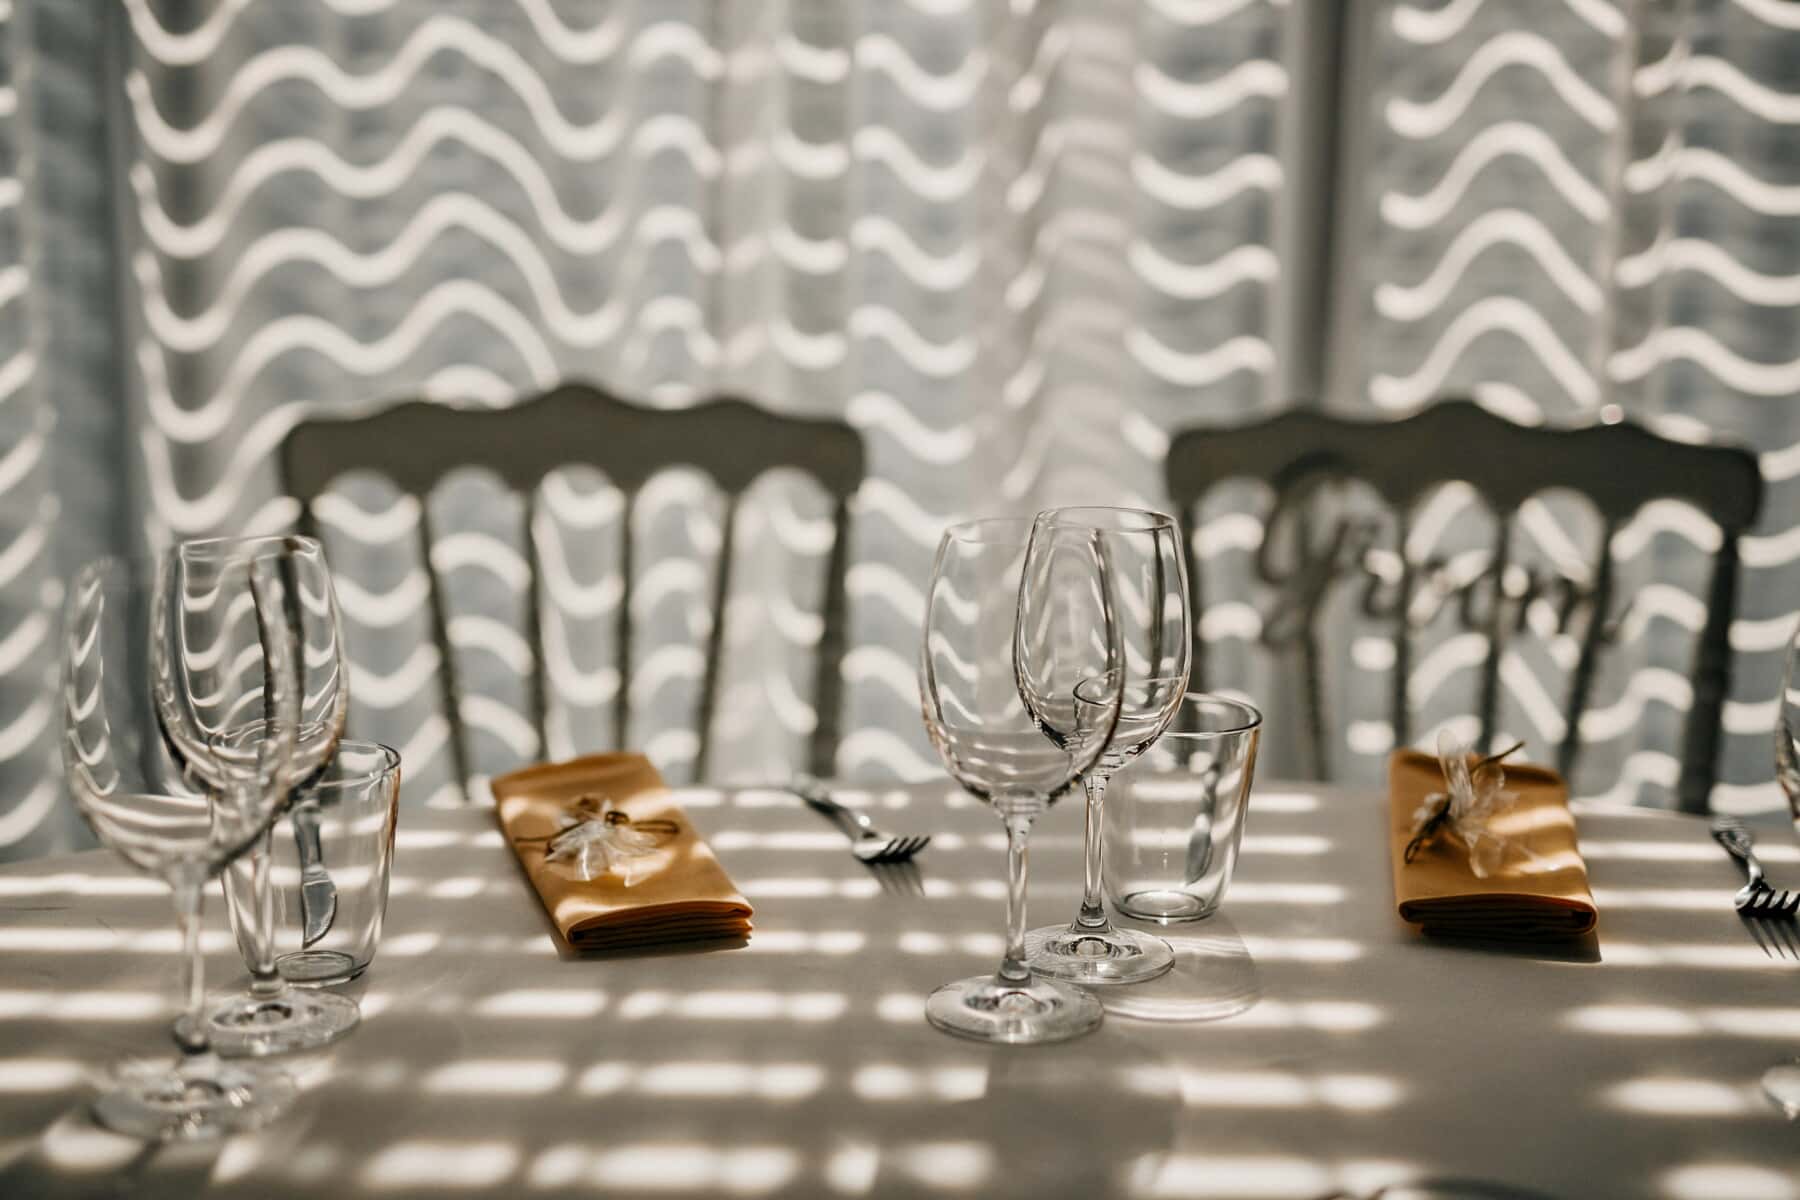 kristal, bayangan, Ruang makan, Ruang makan, kaca, putih, meja, kursi, kursi, Desain